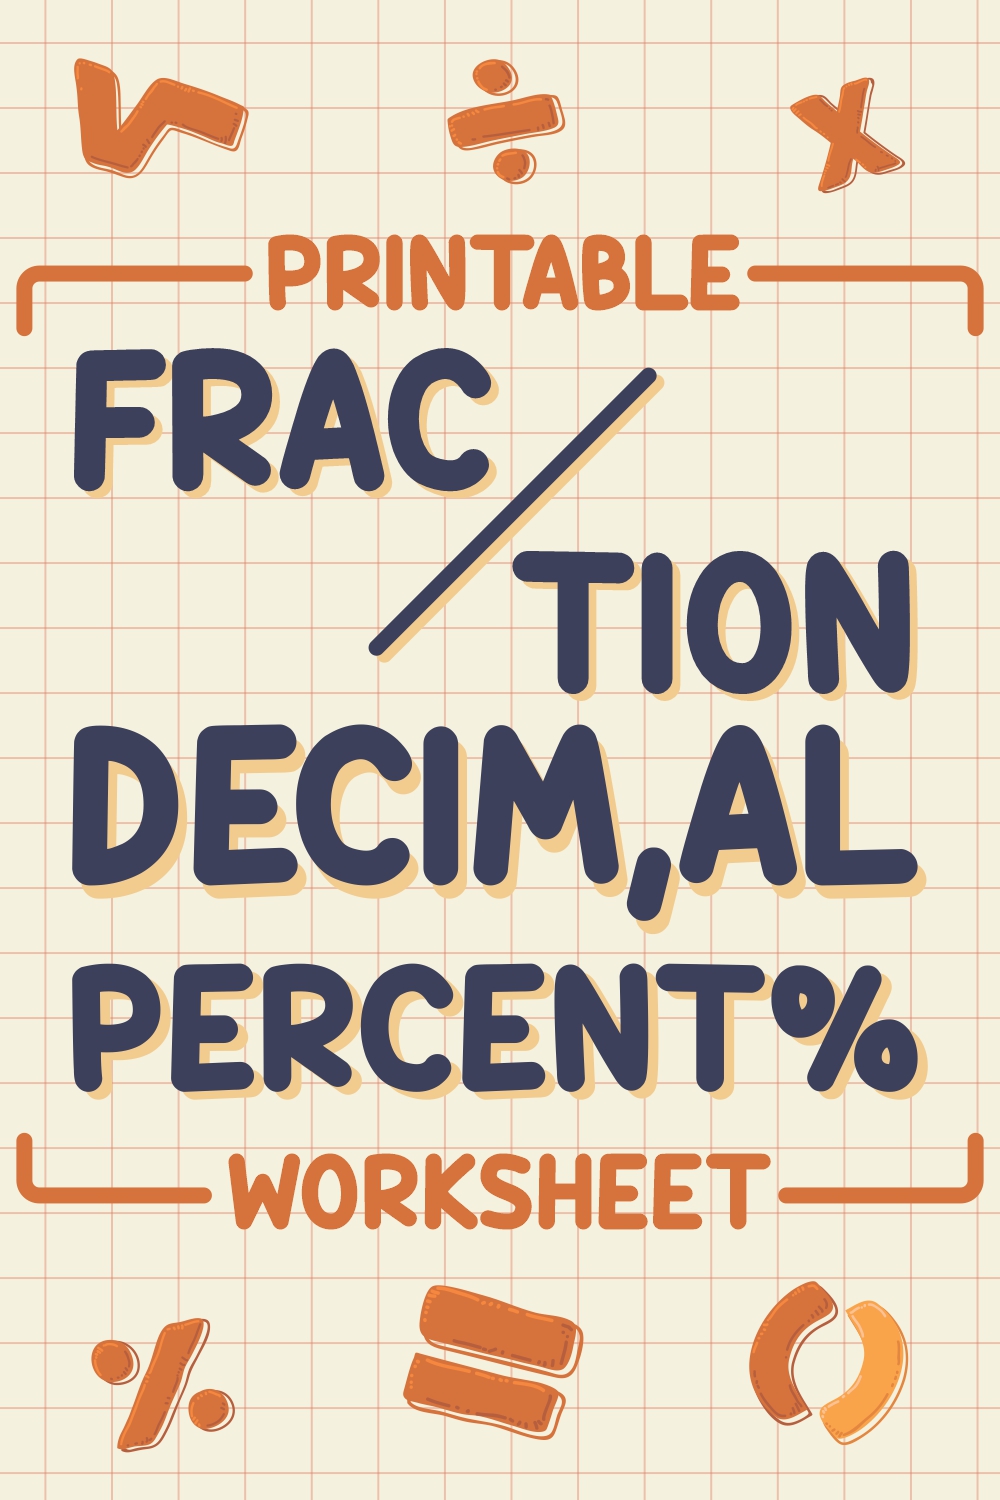 13 Images of Printable Fraction Decimal Percent Worksheet